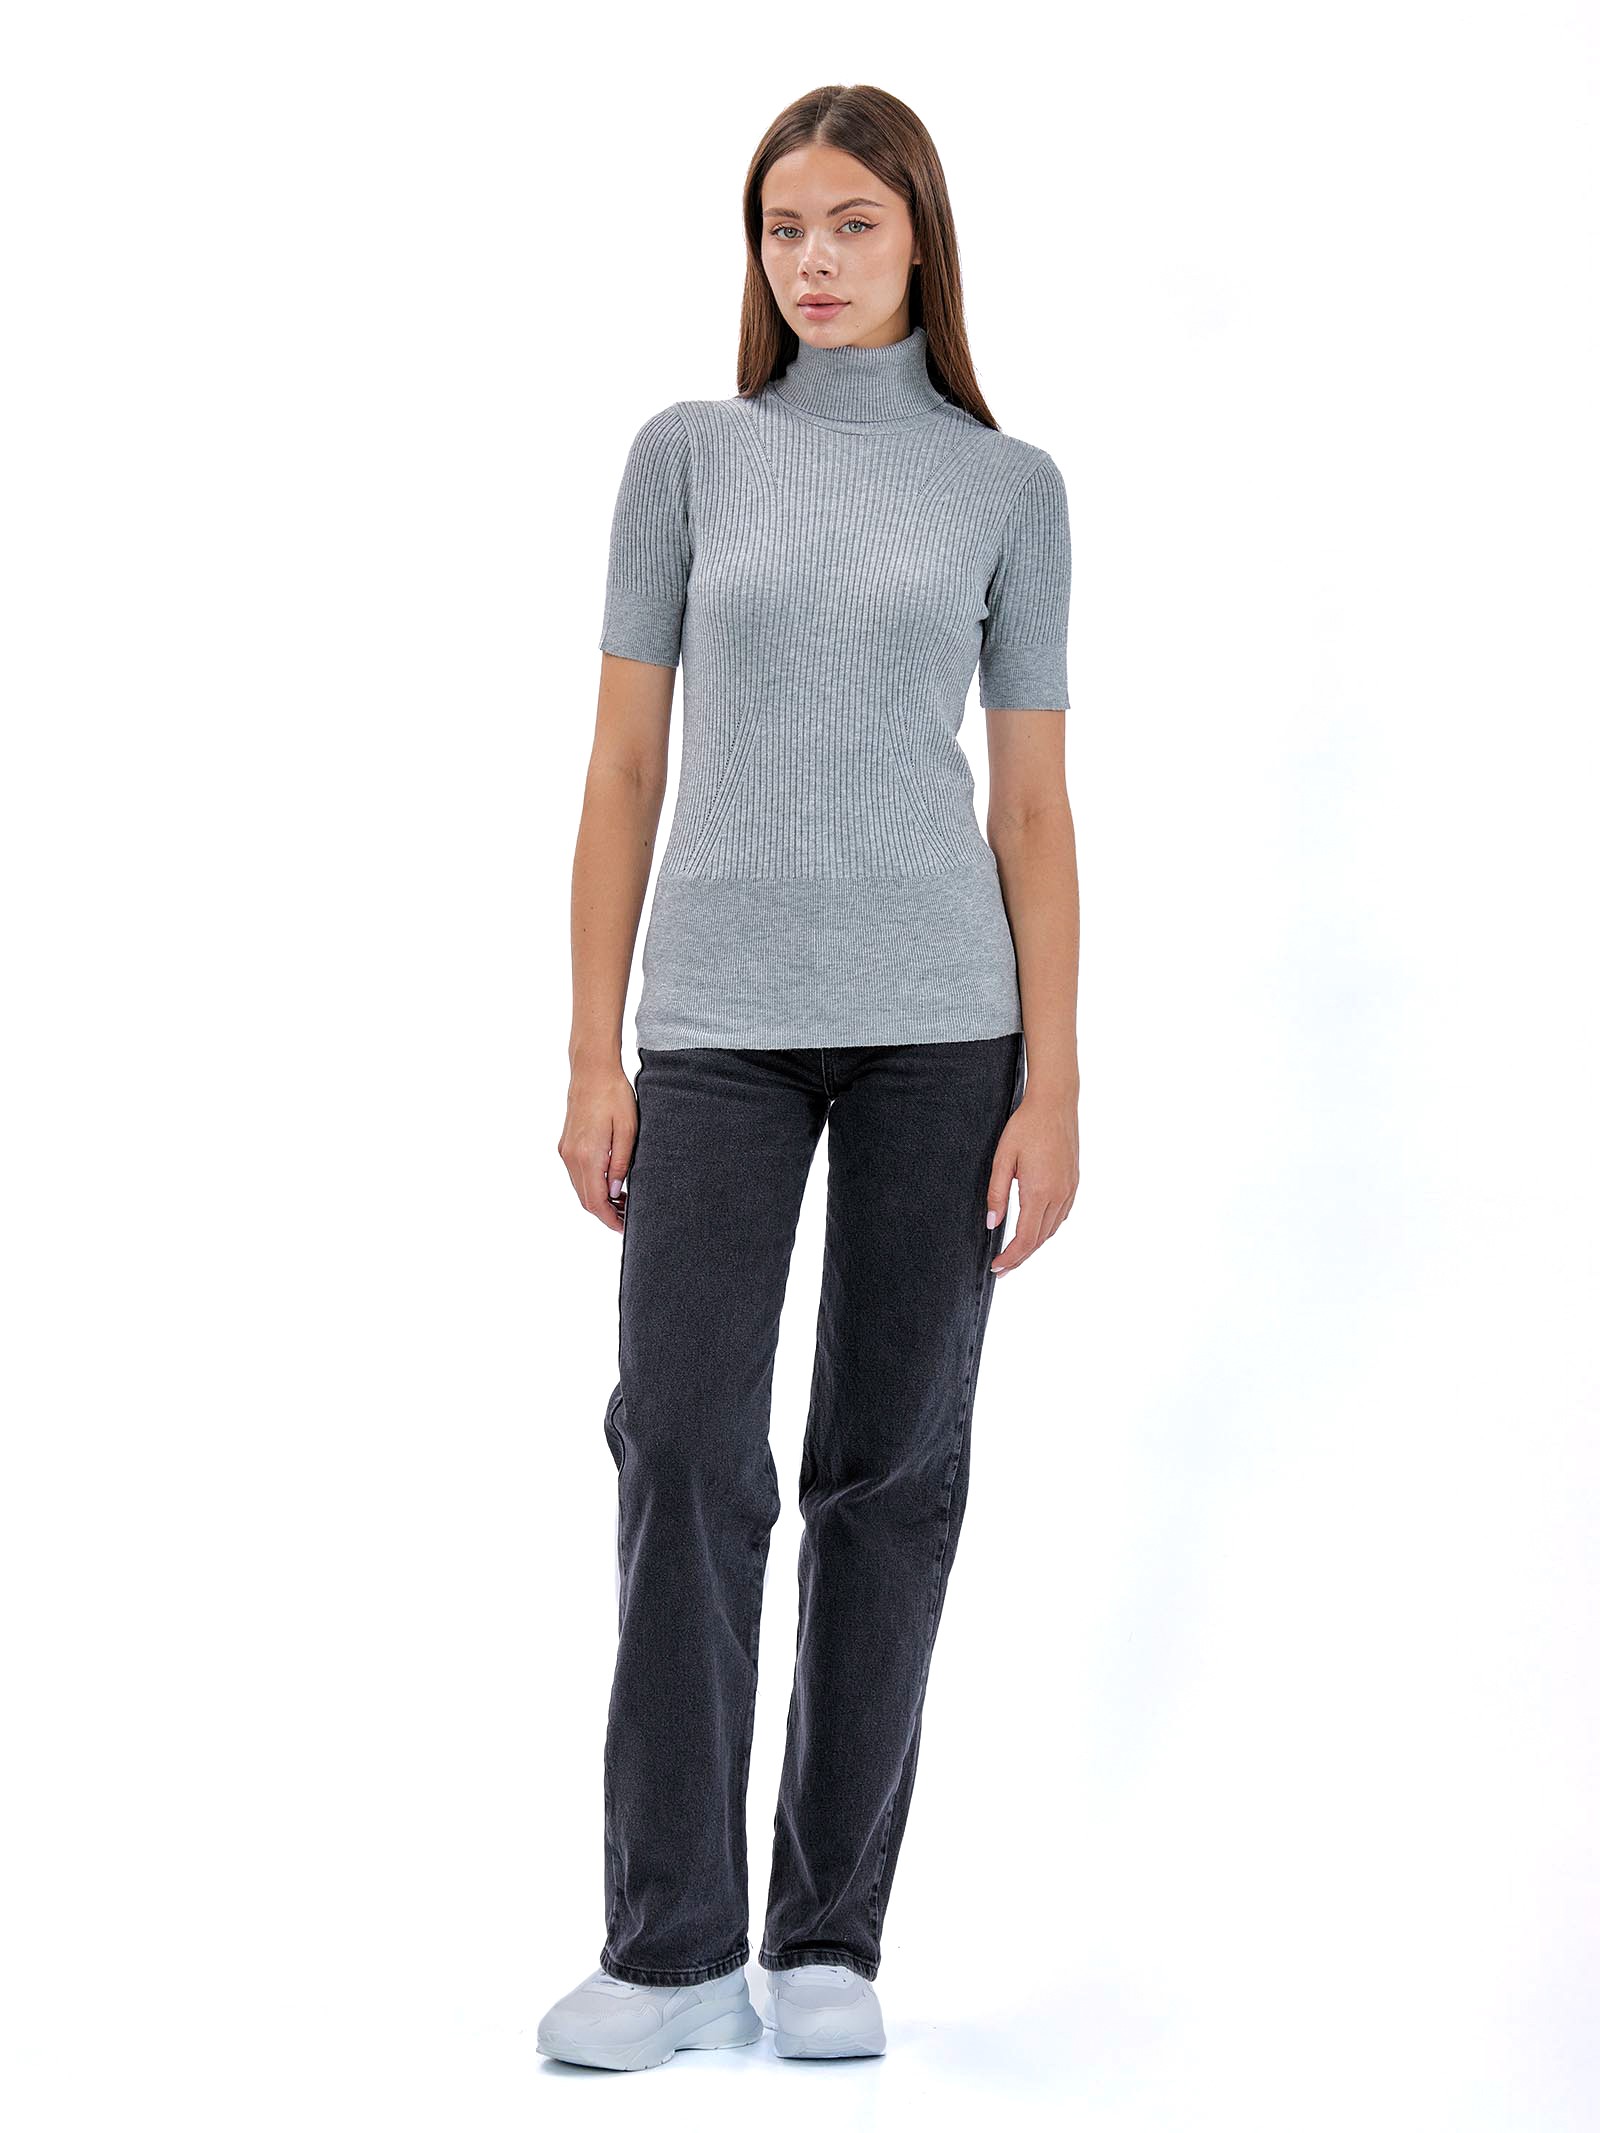 Turtleneck Short Sleeve Sweater Dark Grey